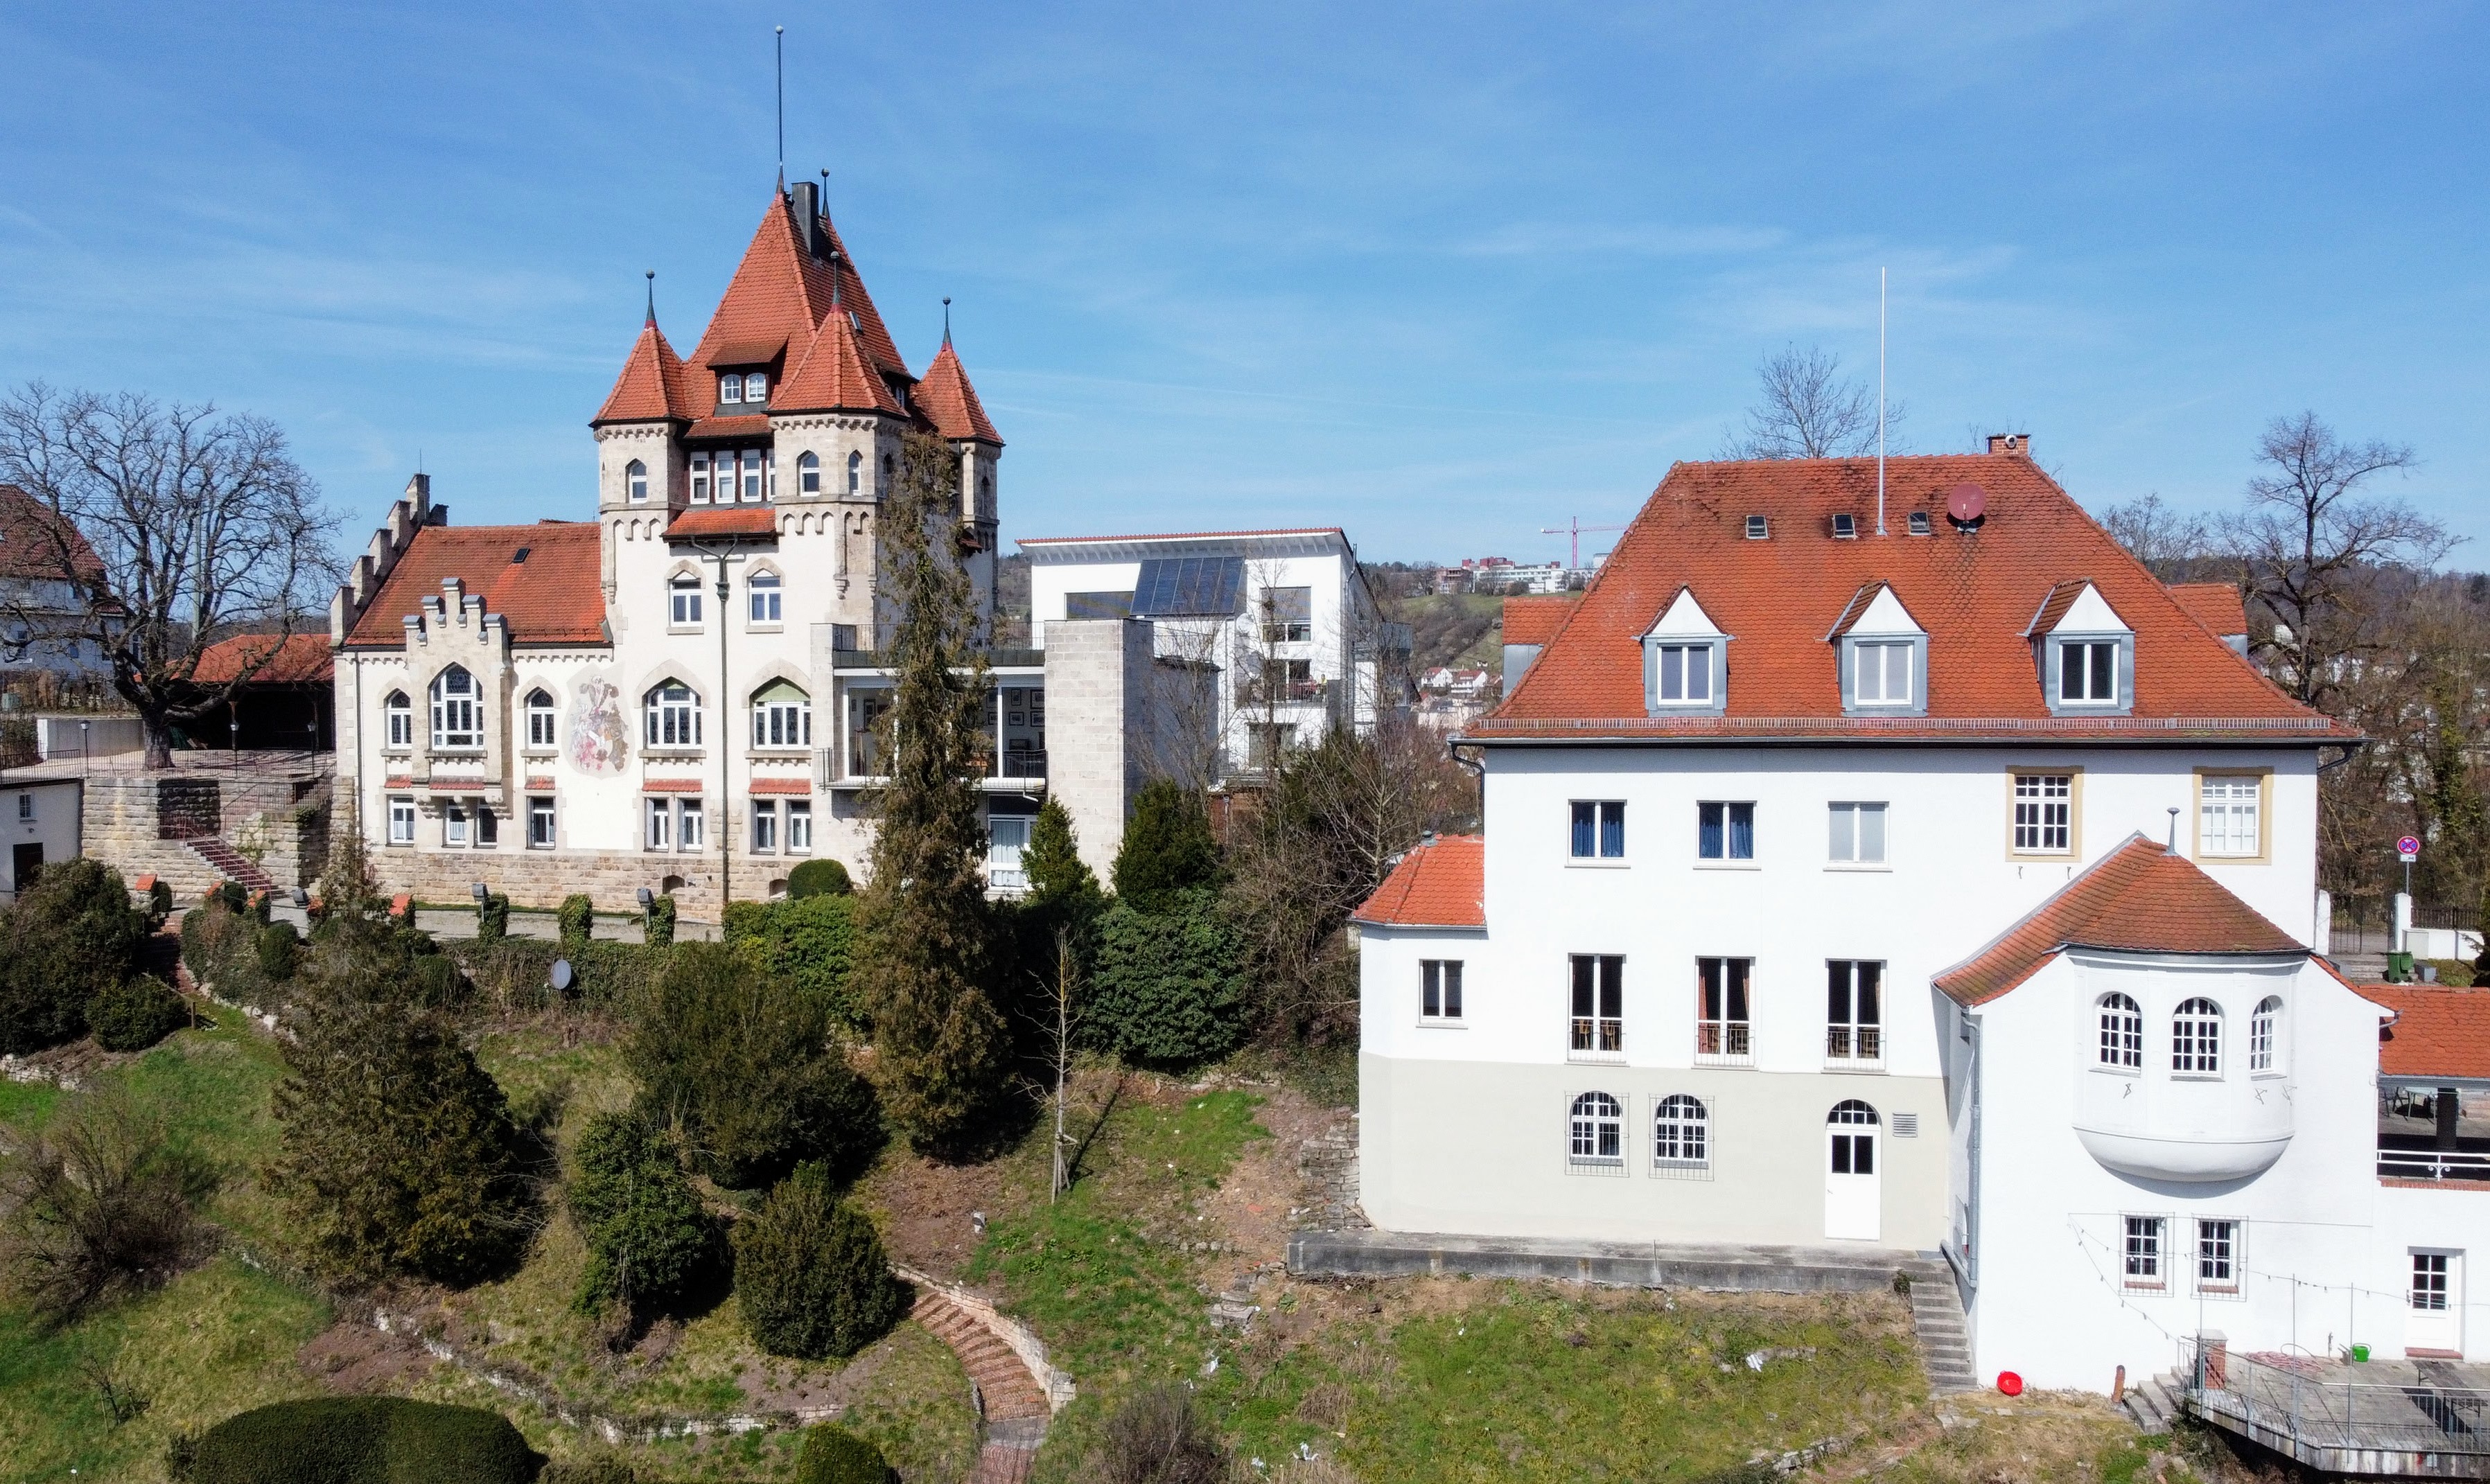 Igelhaus und Haus Derendingia am Ende der Schlossbergstraße zum Schloss hin